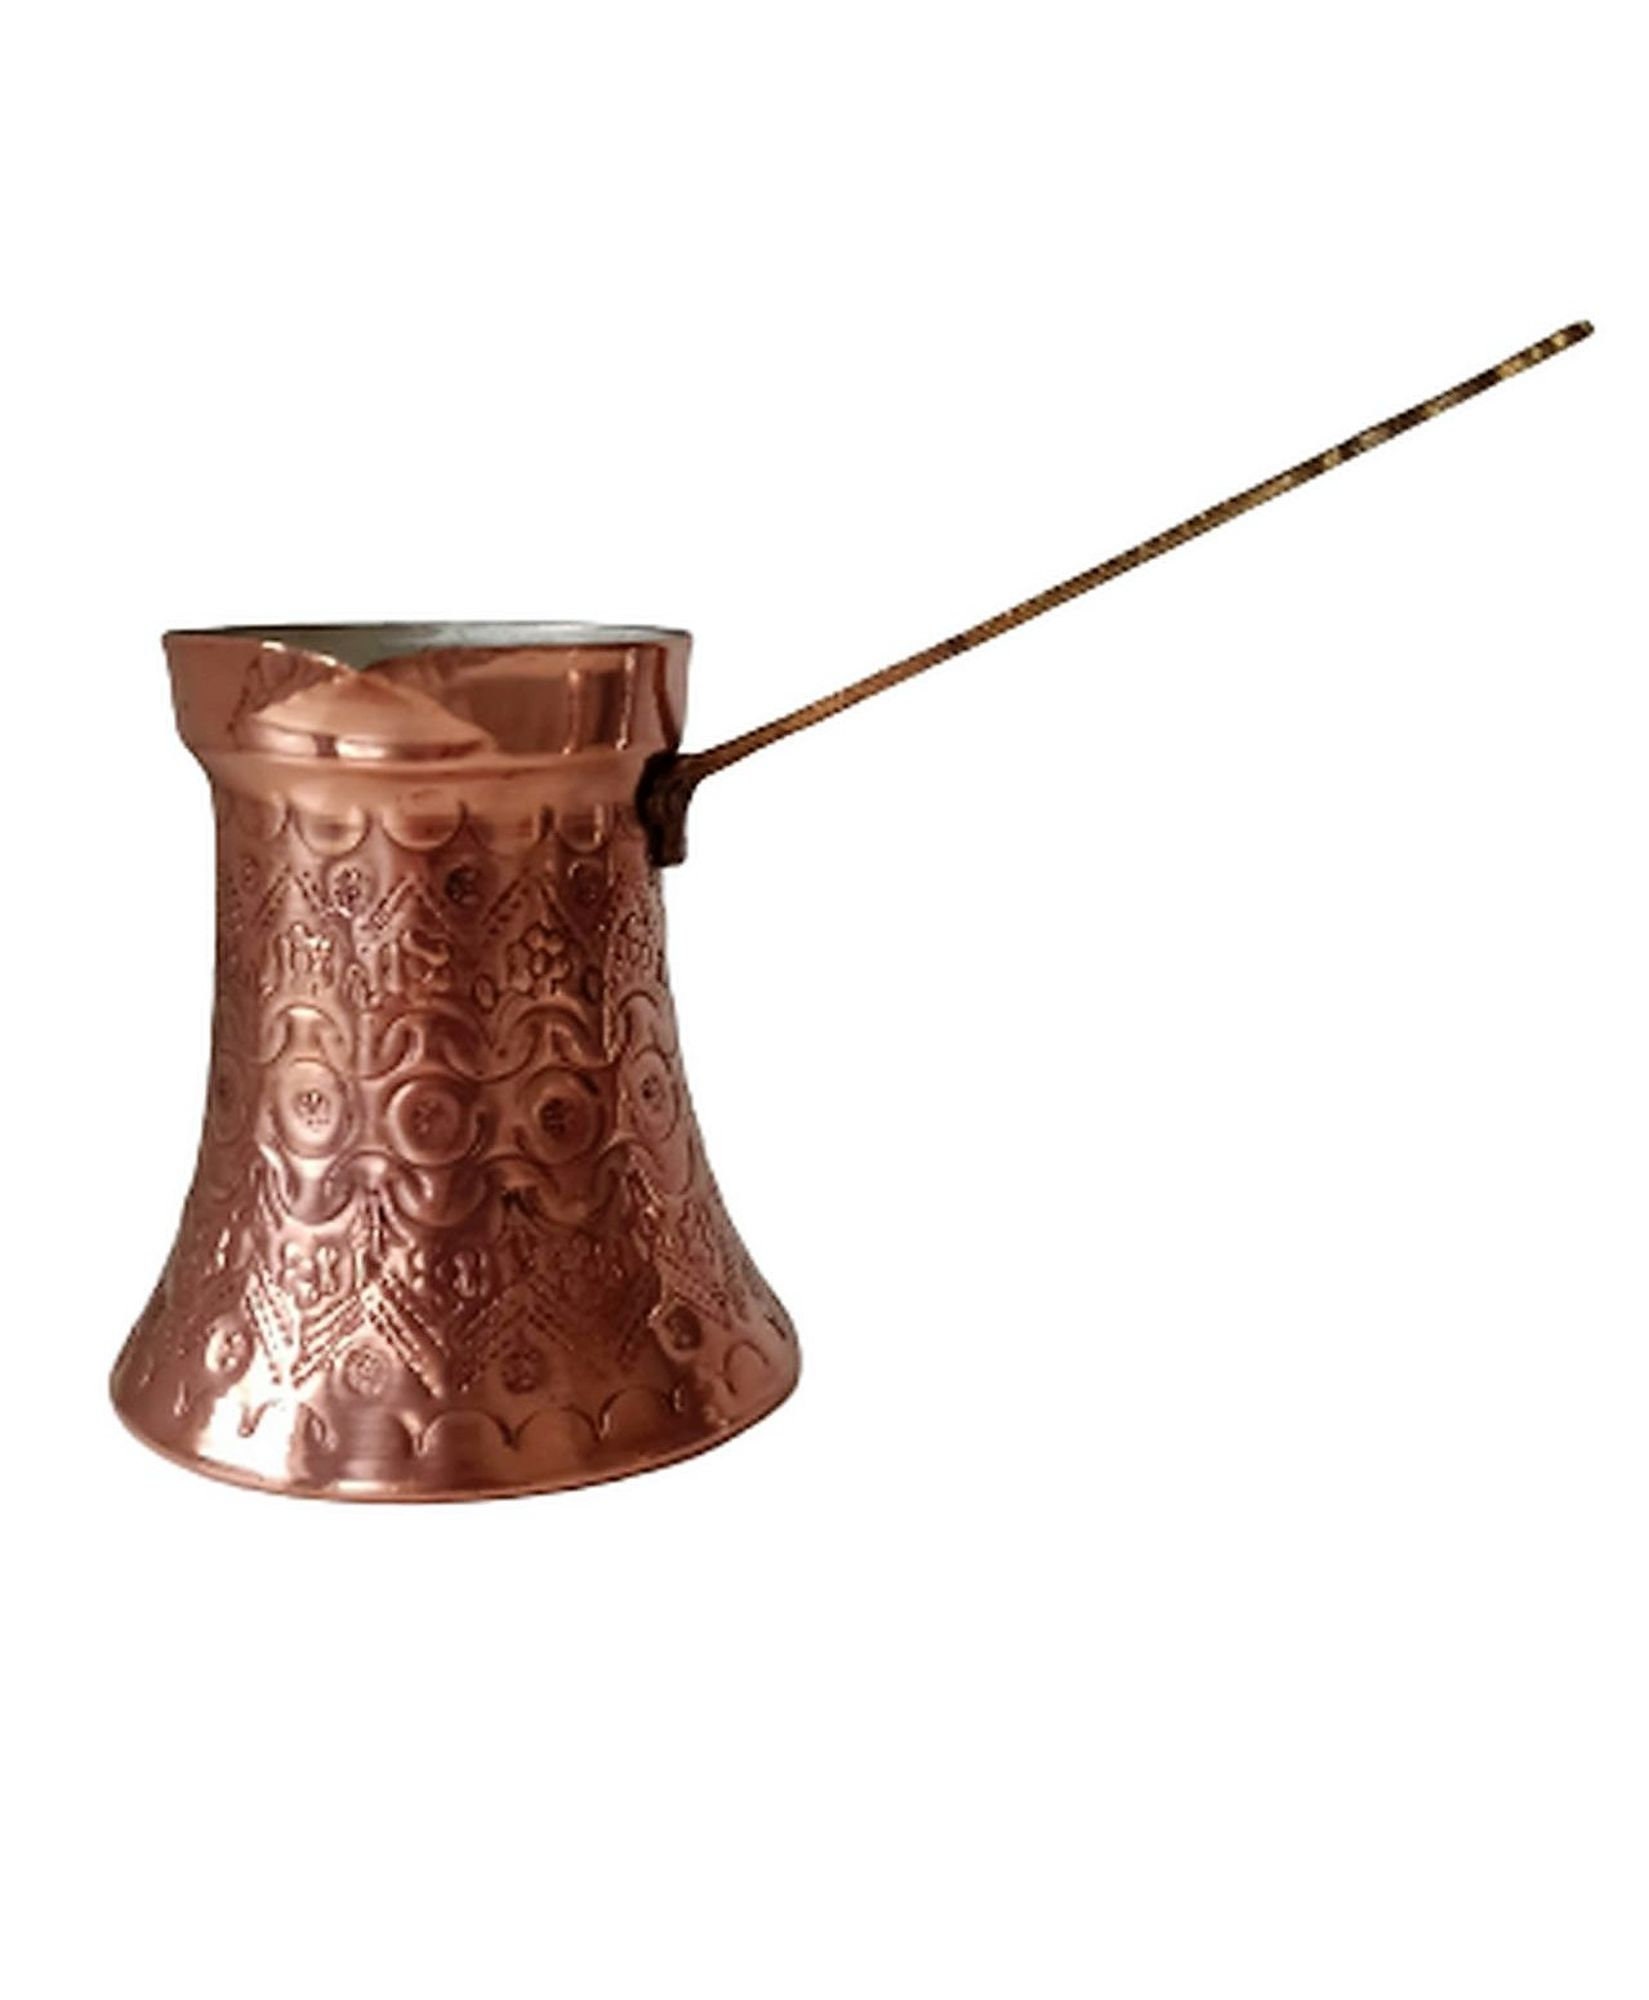 Copper Coffee Pot  Handmade copper pots for sale - viokagallery